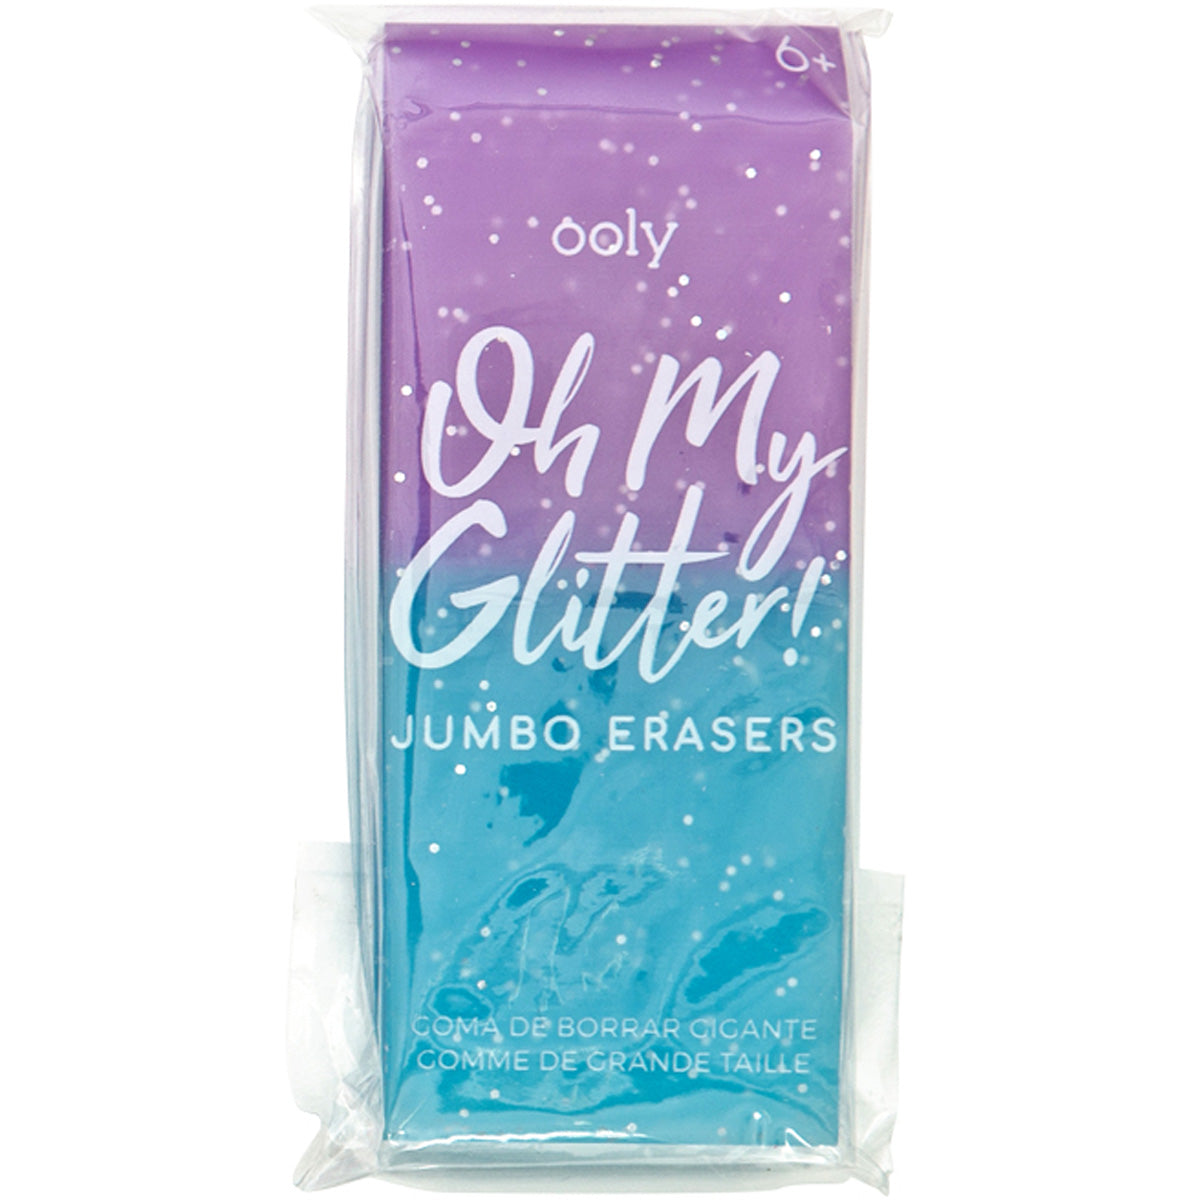 Ooly Funkelnde Magie für deine Kreativität! 💖🌟Entdecke die Oh My Glitter Radiergummis - ein funkelndes Statement für deinen einzigartigen Stil! ✨💫